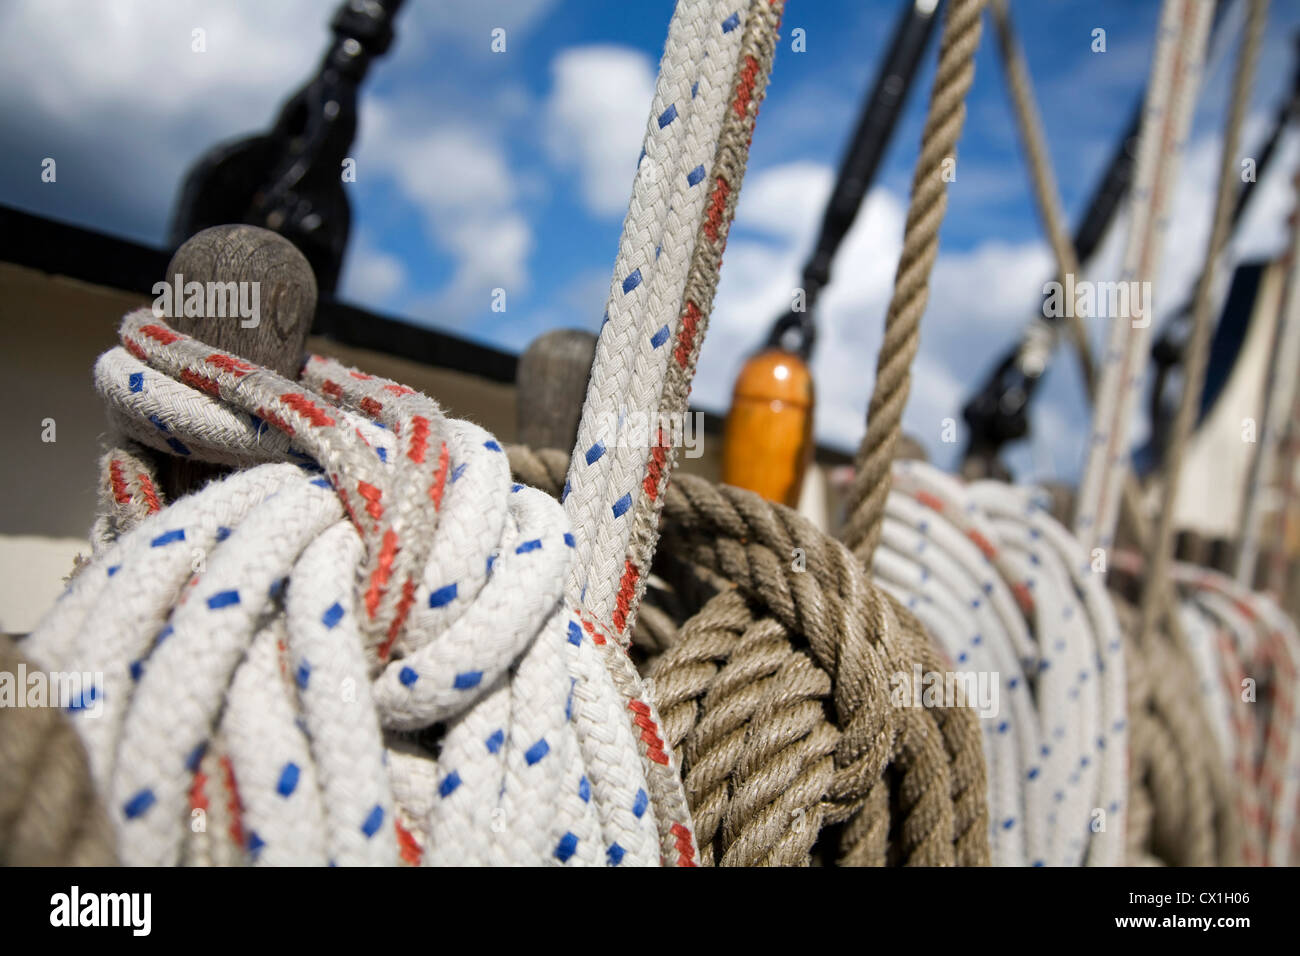 Détail montrant des noeuds en gréage cordes à bord du grand voilier trois-mâts barque-goélette / Antigua sur la façon de Svalbard, Spitzberg Banque D'Images